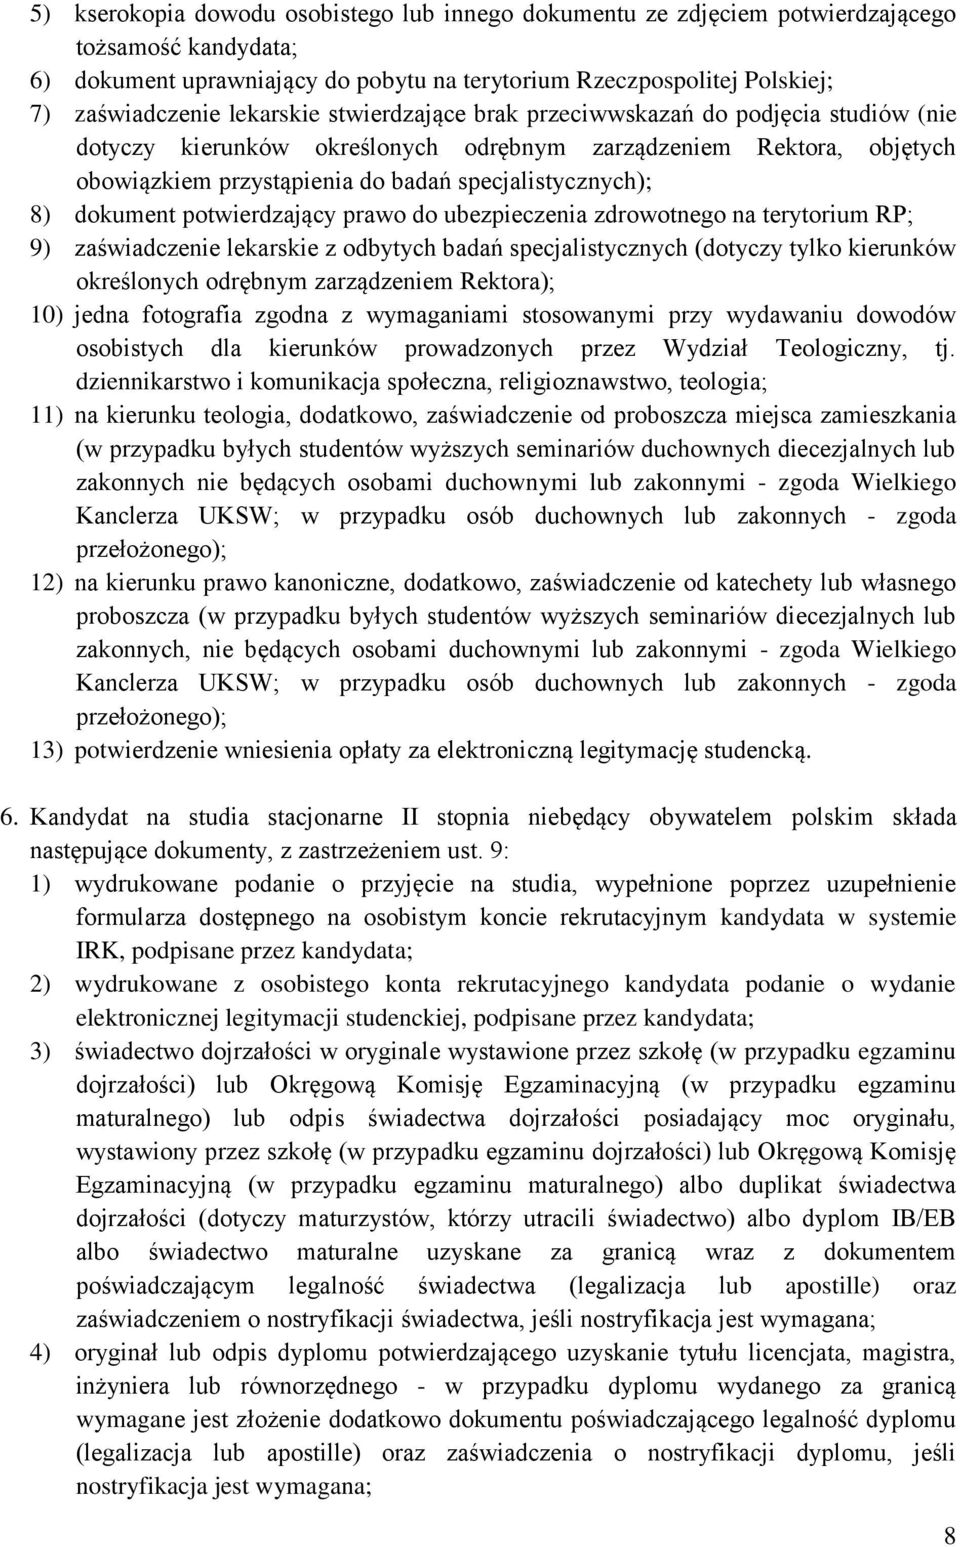 dokument potwierdzający prawo do ubezpieczenia zdrowotnego na terytorium RP; 9) zaświadczenie lekarskie z odbytych badań specjalistycznych (dotyczy tylko kierunków określonych odrębnym zarządzeniem